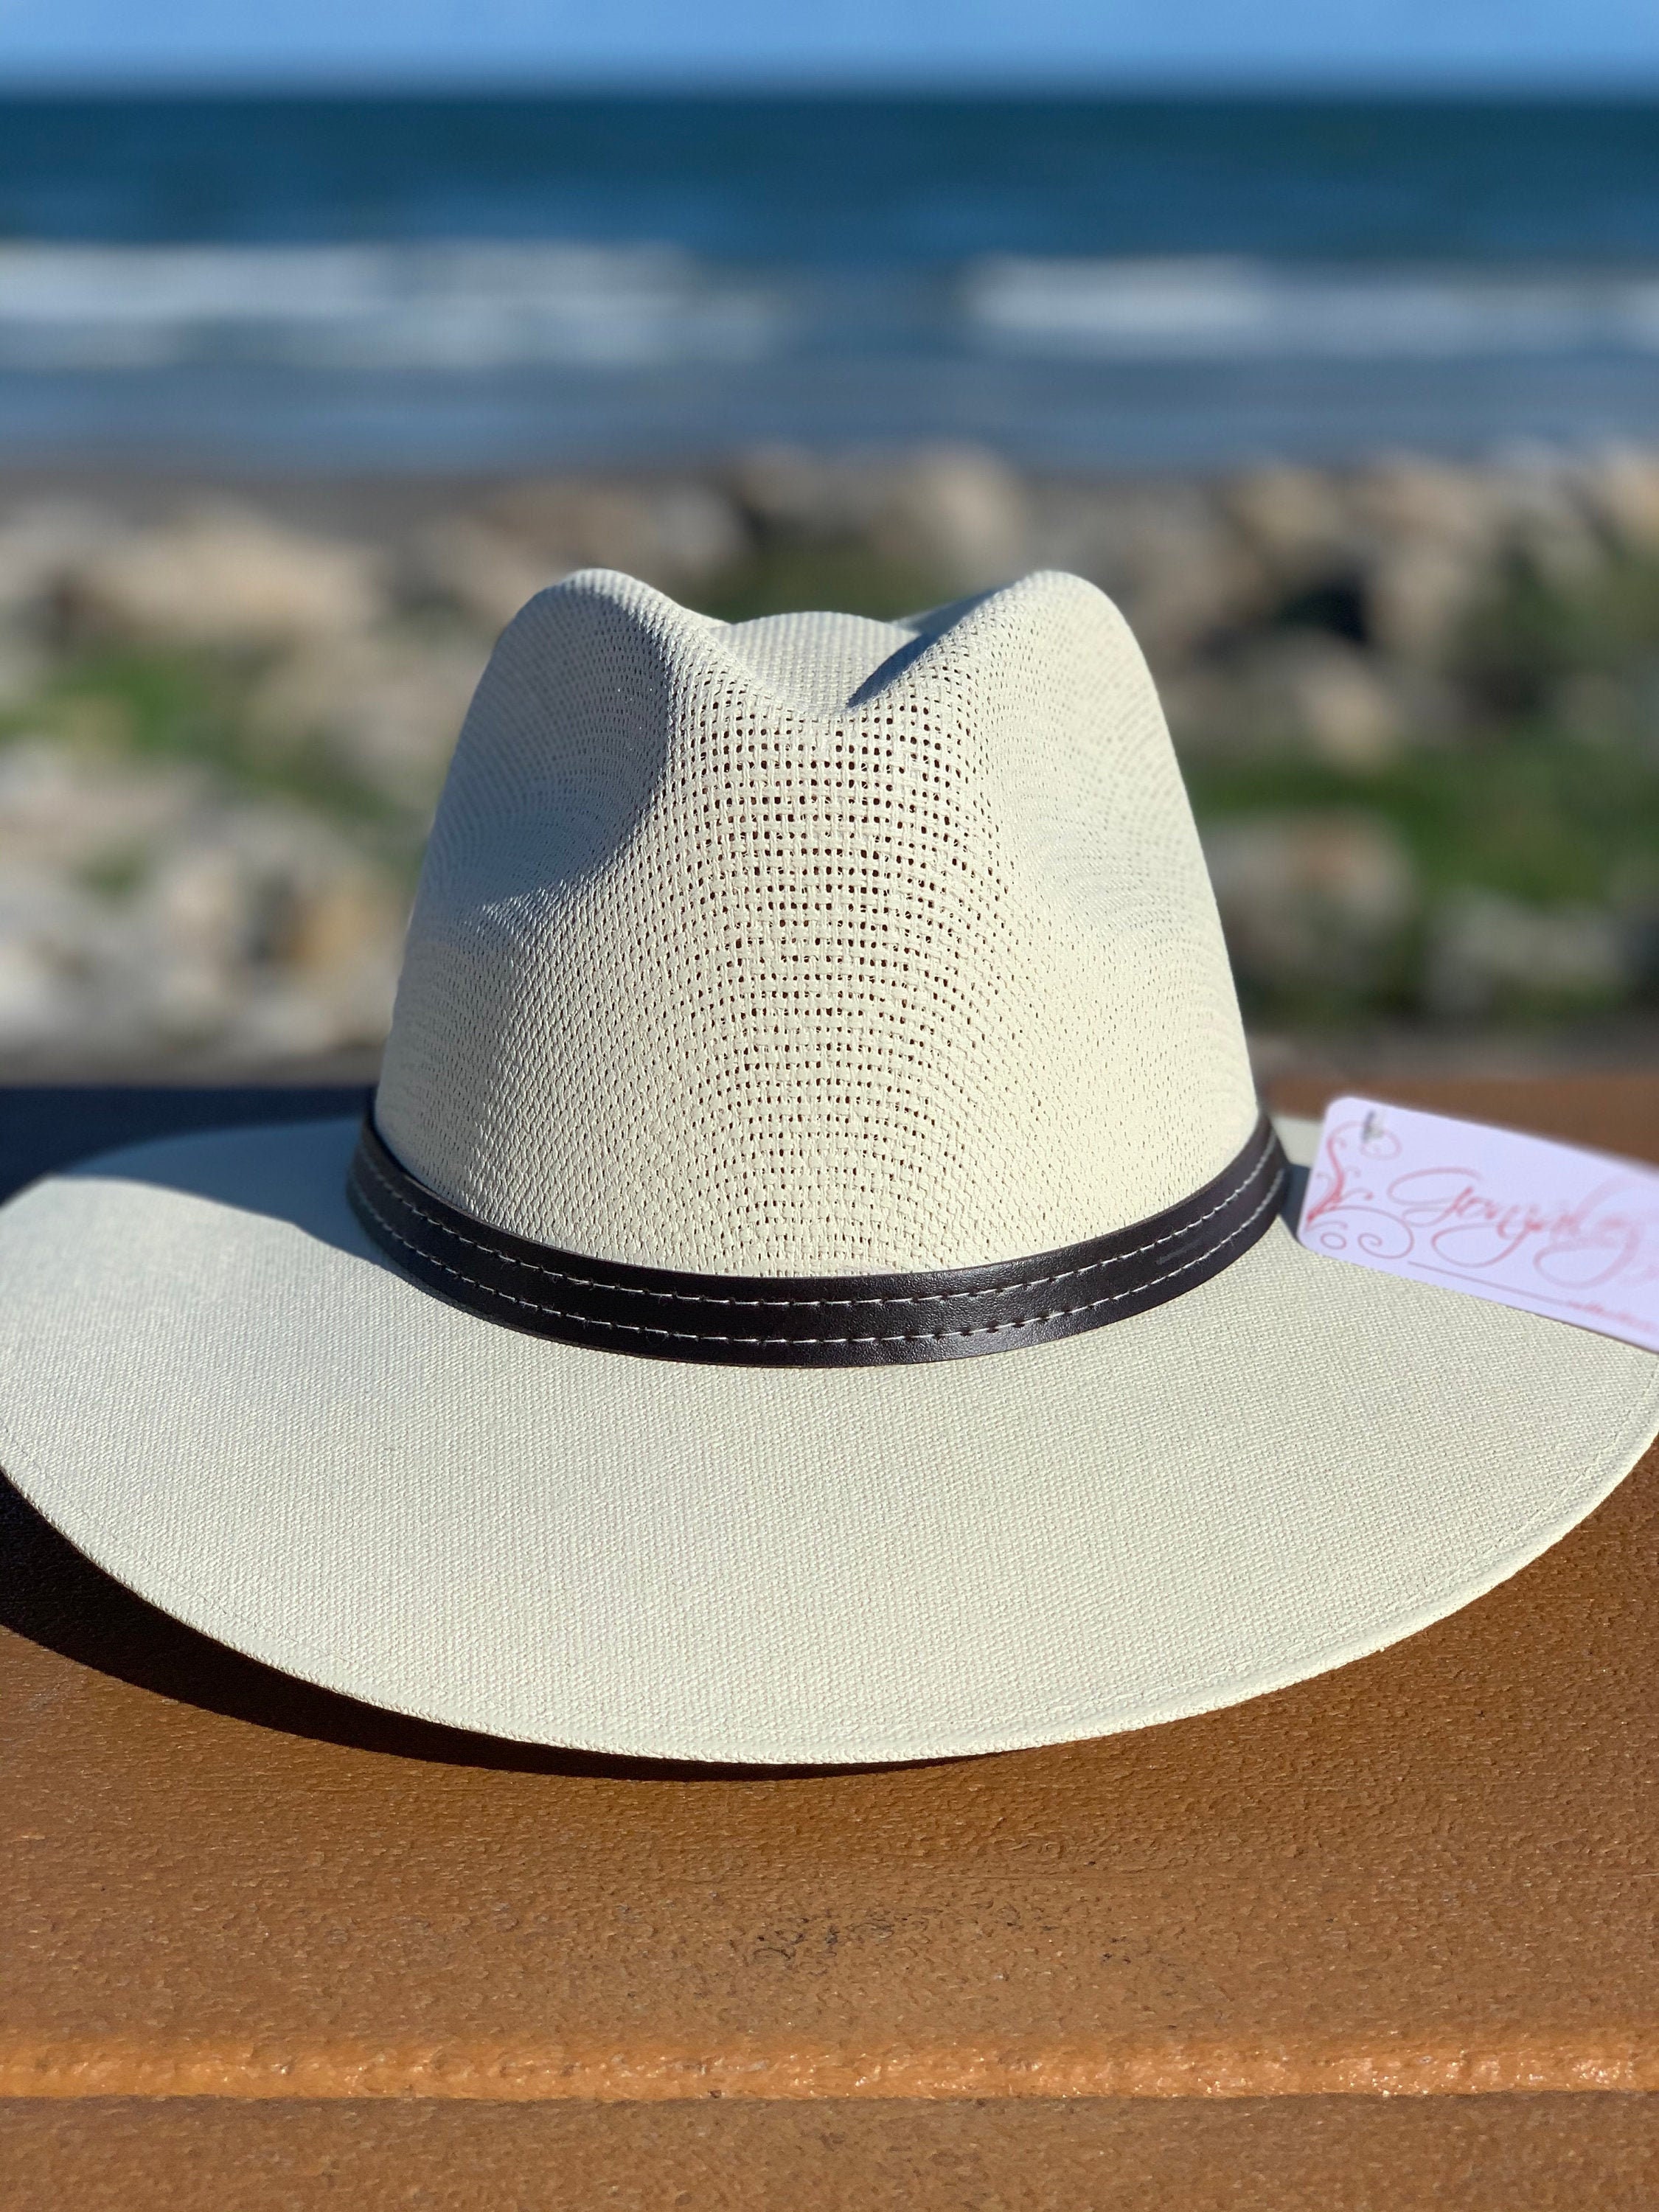 kalf Buitenshuis schakelaar sombreros playa hombre Mexico Rally